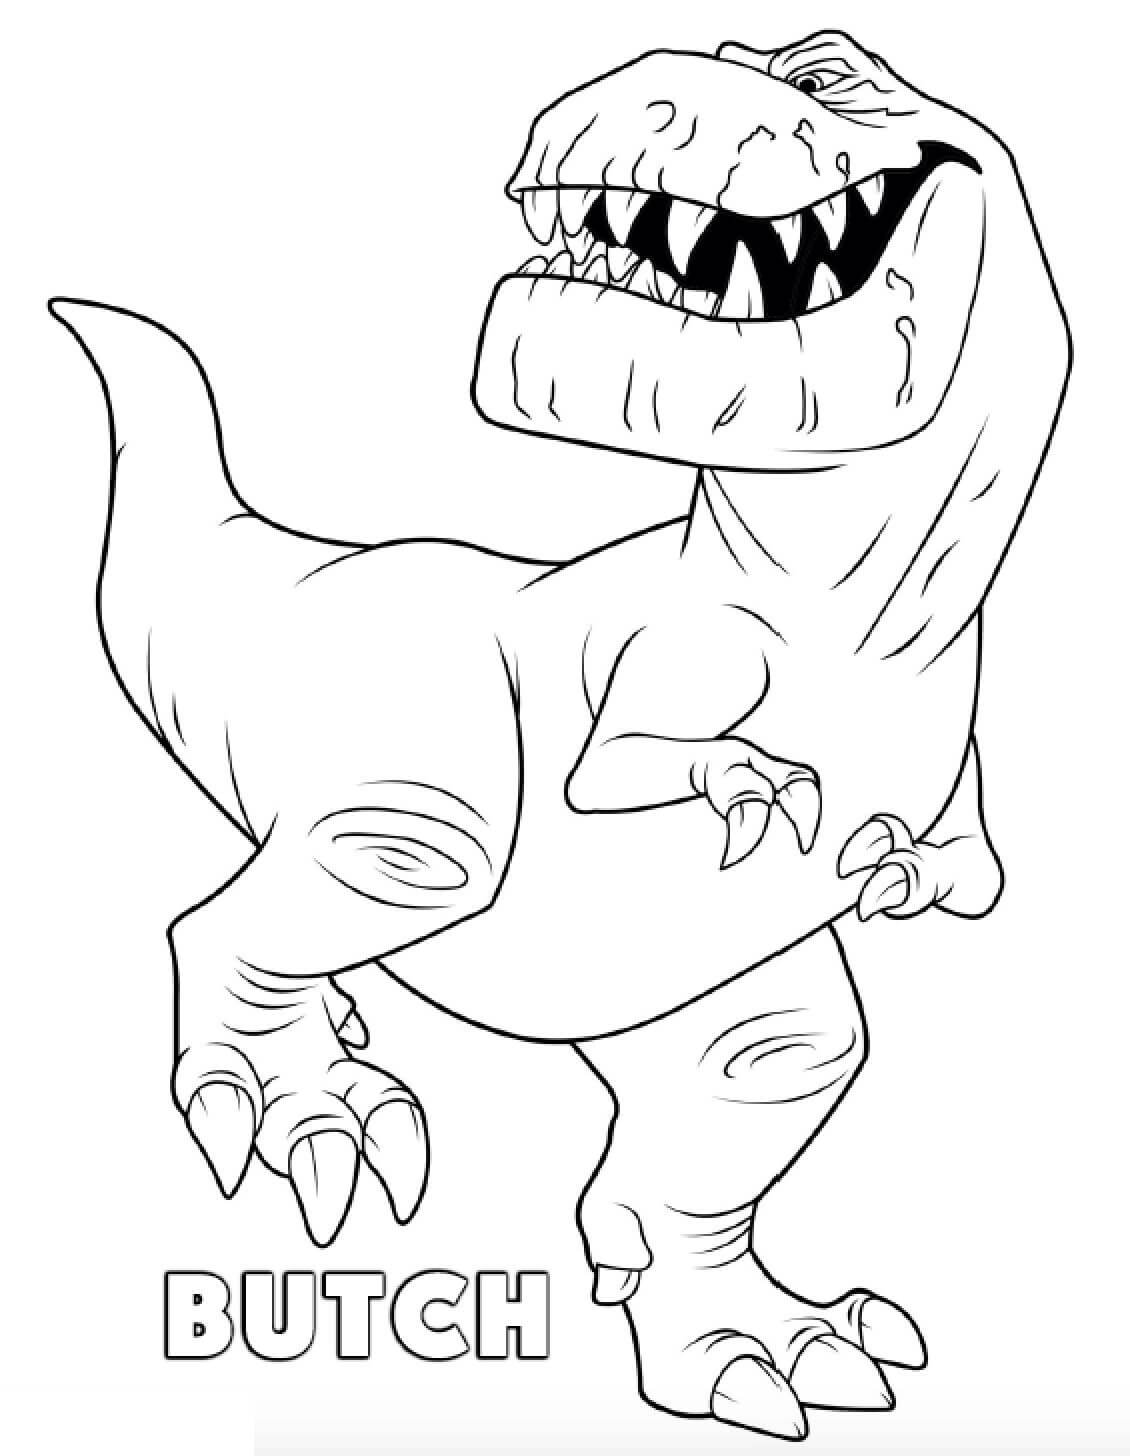 공룡 부치 coloring page